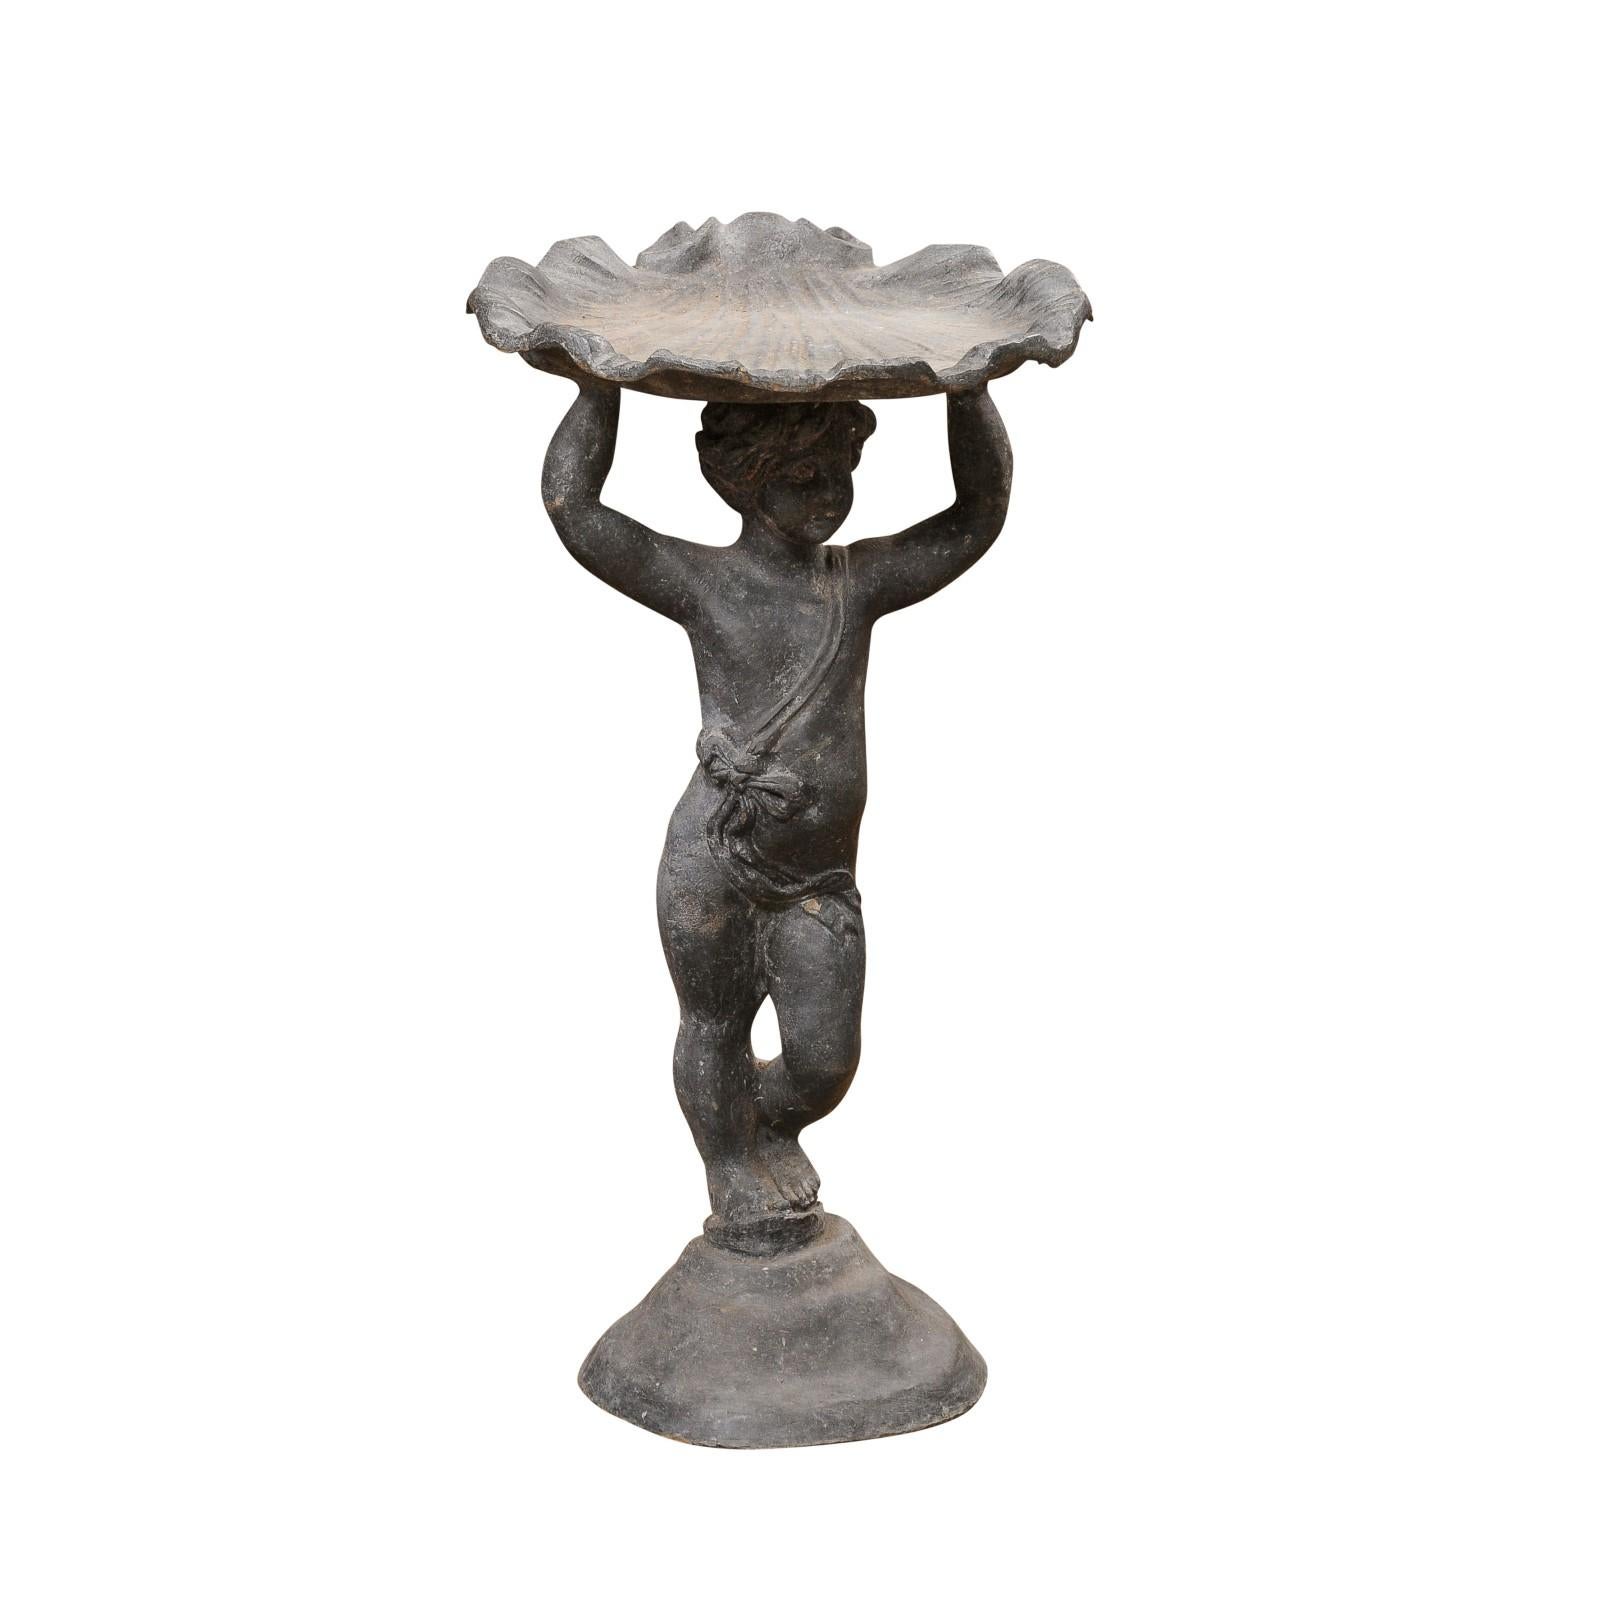 Eine englische Vogeltränke aus Eisen im griechisch-römischen Stil aus dem 20. Jahrhundert, die einen stehenden Cherub darstellt, der eine Muschel auf dem Kopf trägt. Erleben Sie die bezaubernde Verschmelzung von englischer Handwerkskunst und